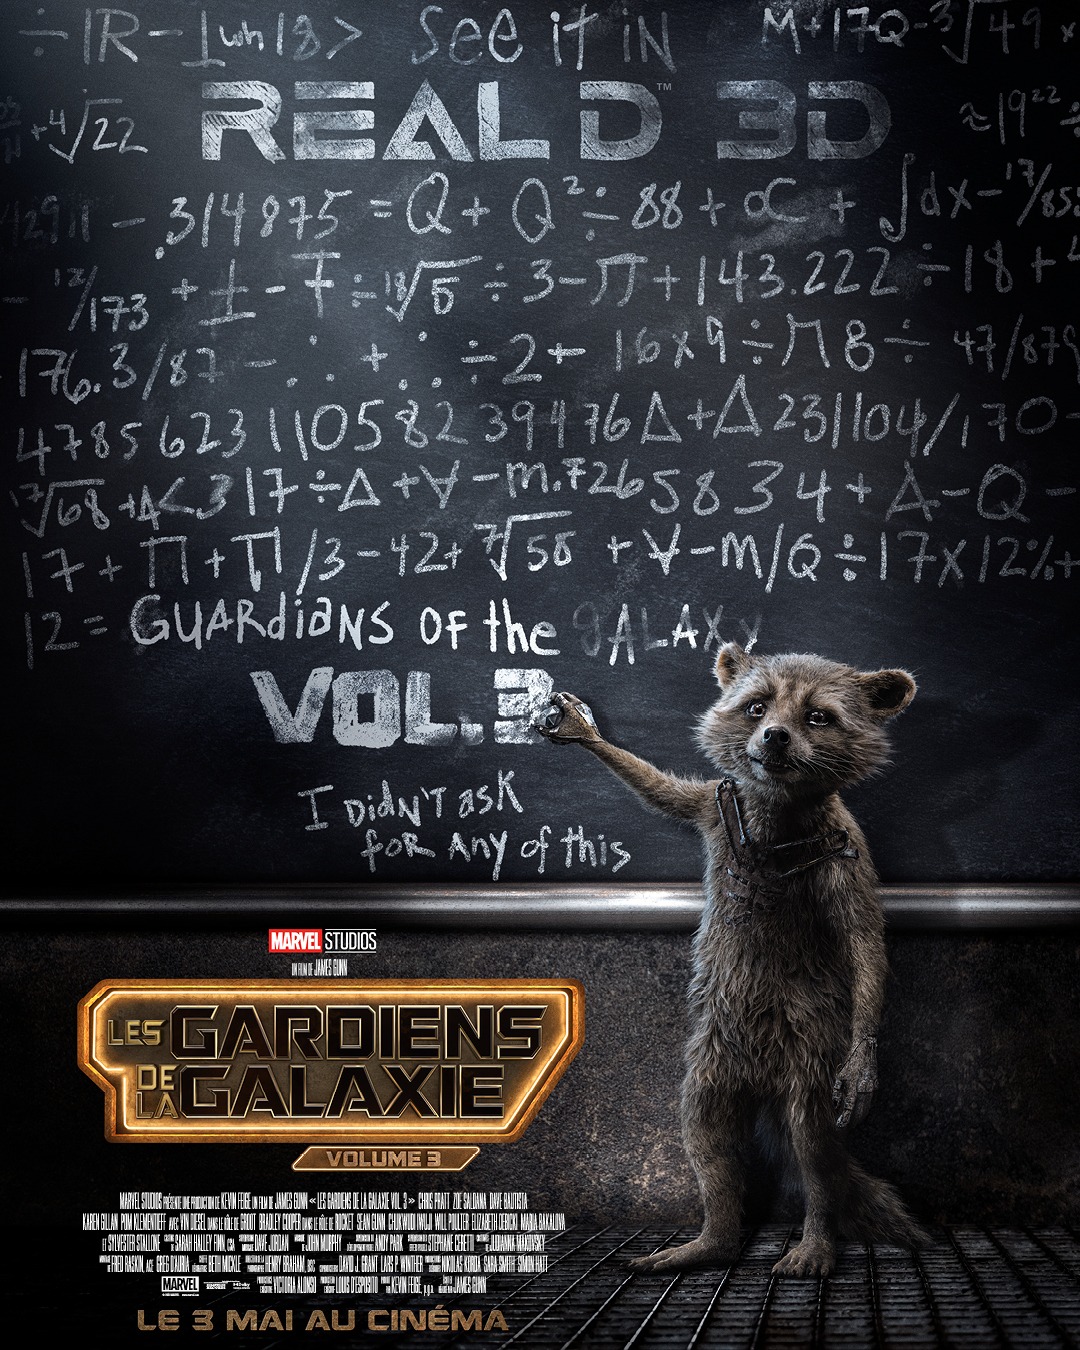 Marvel FR on X: Découvrez Les Gardiens de la Galaxie Volume 3 en 3D, dès  le 3 mai au cinéma. #GardiensdelaGalaxie3  / X